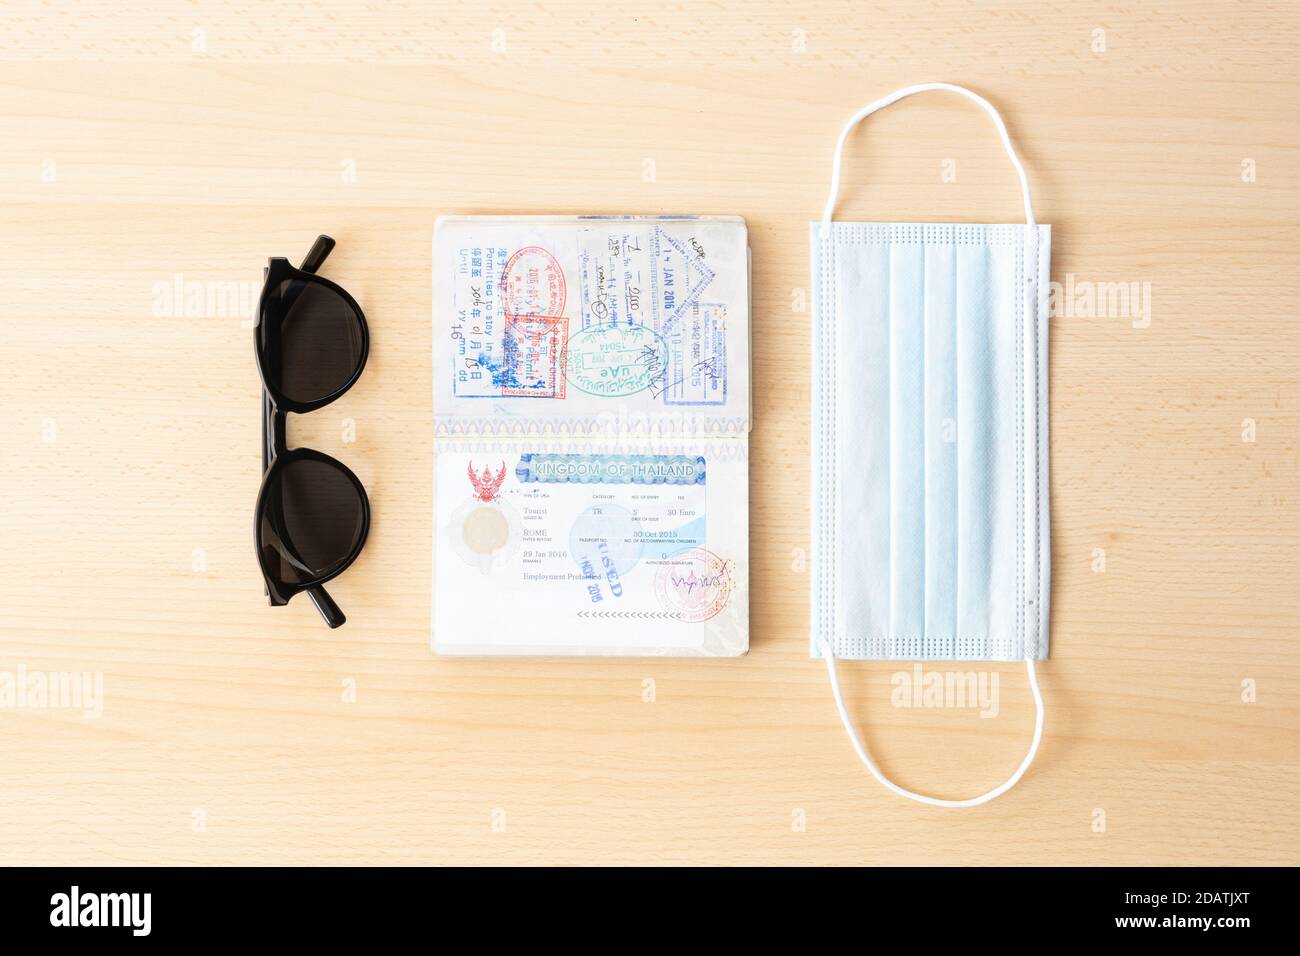 Sicheres Reisekonzept, Gesichtsmaske, Reisepass und Sonnenbrille sind auf einem Holztisch angeordnet. Stockfoto